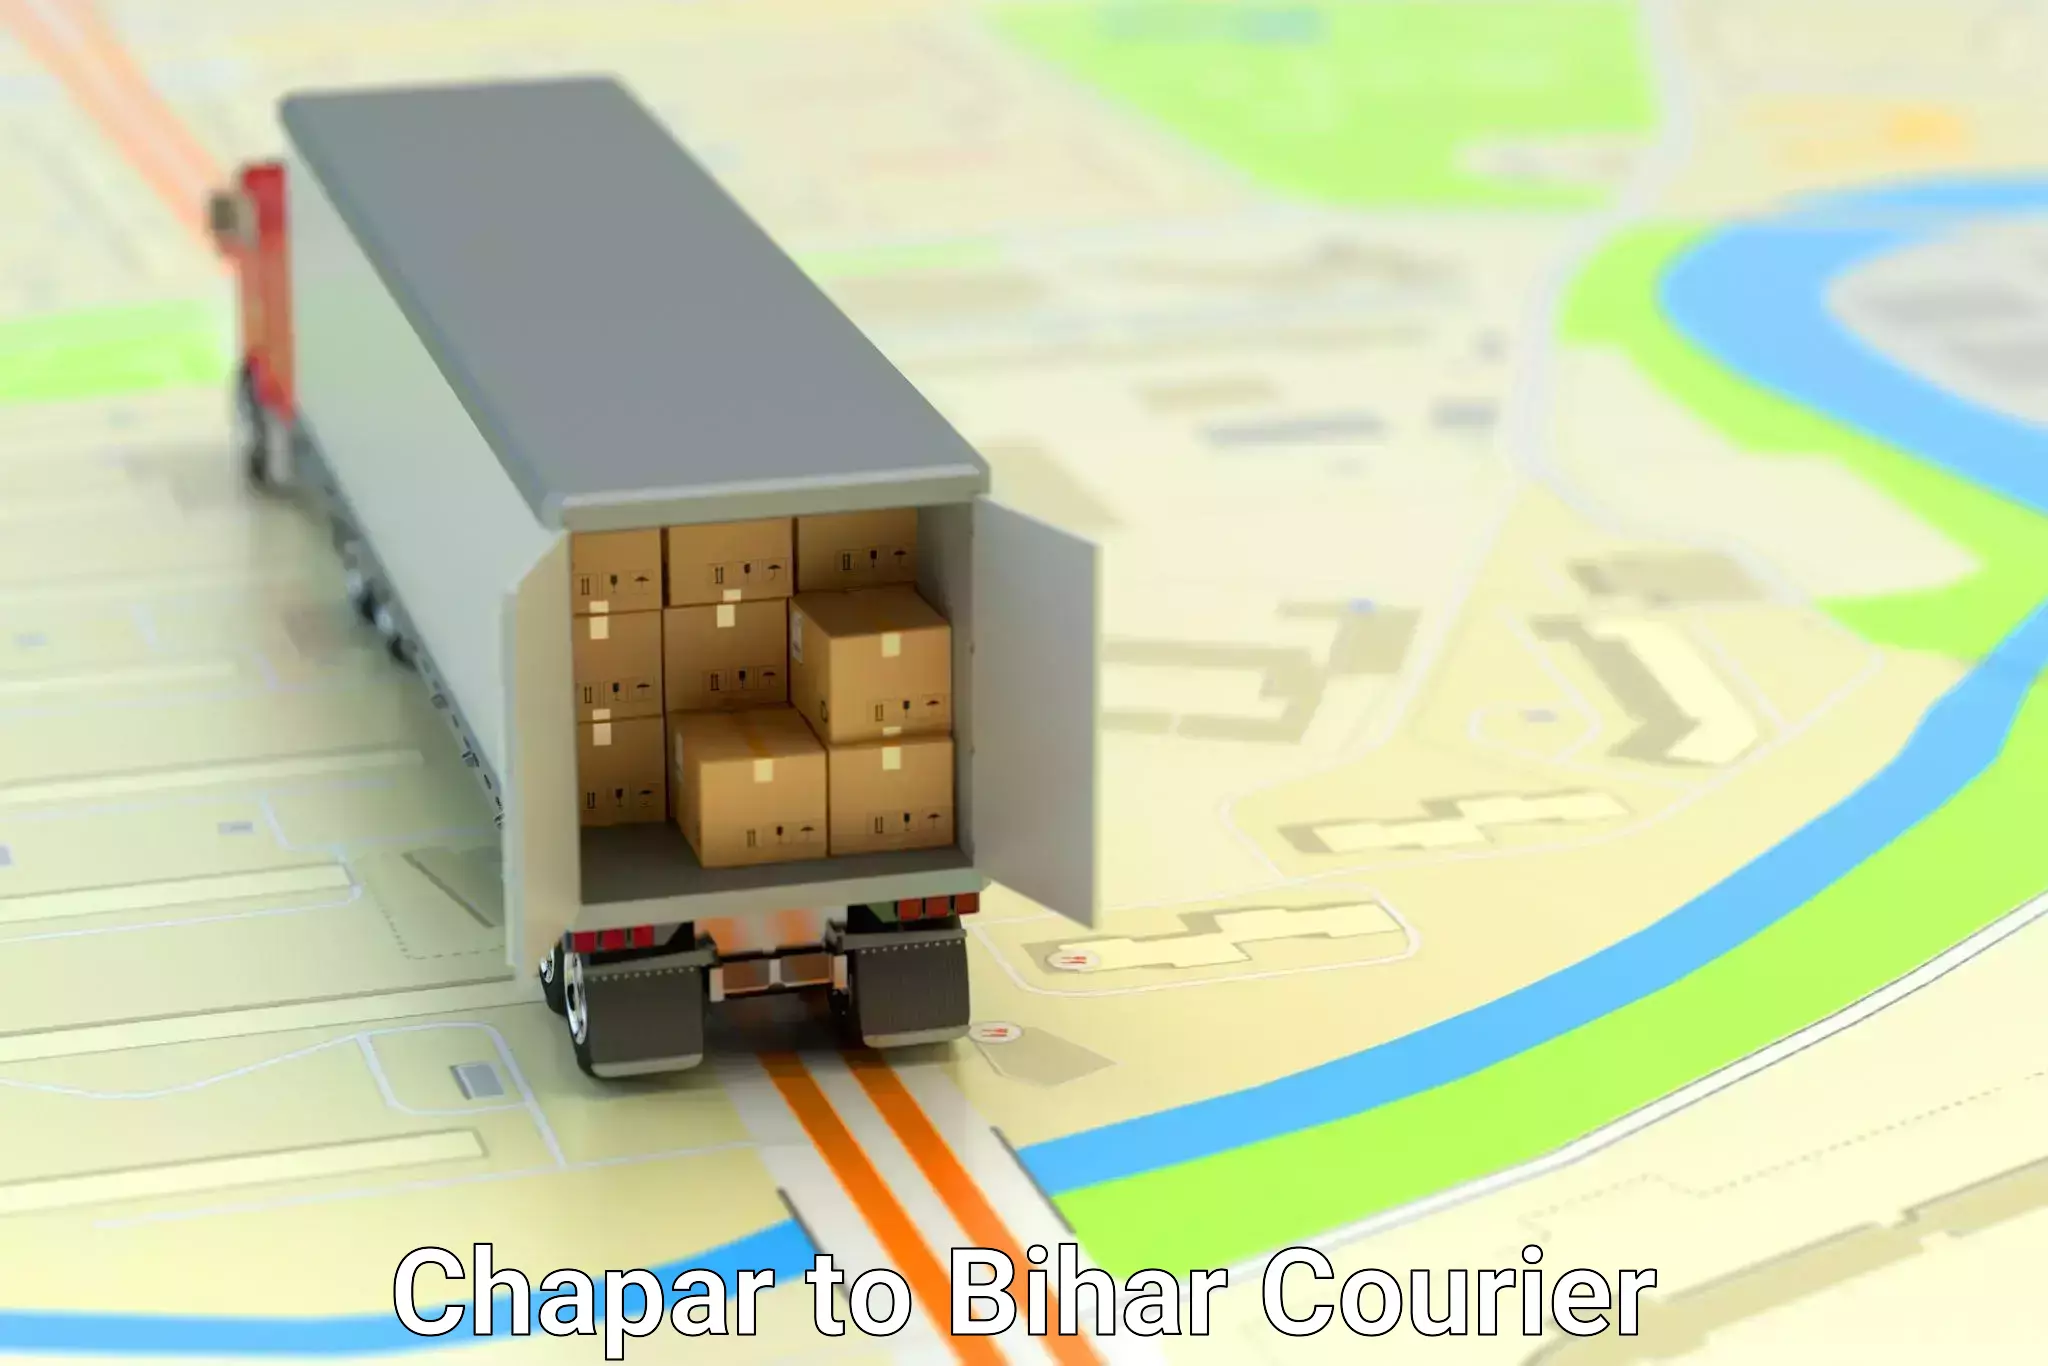 Smart logistics solutions Chapar to Bihar